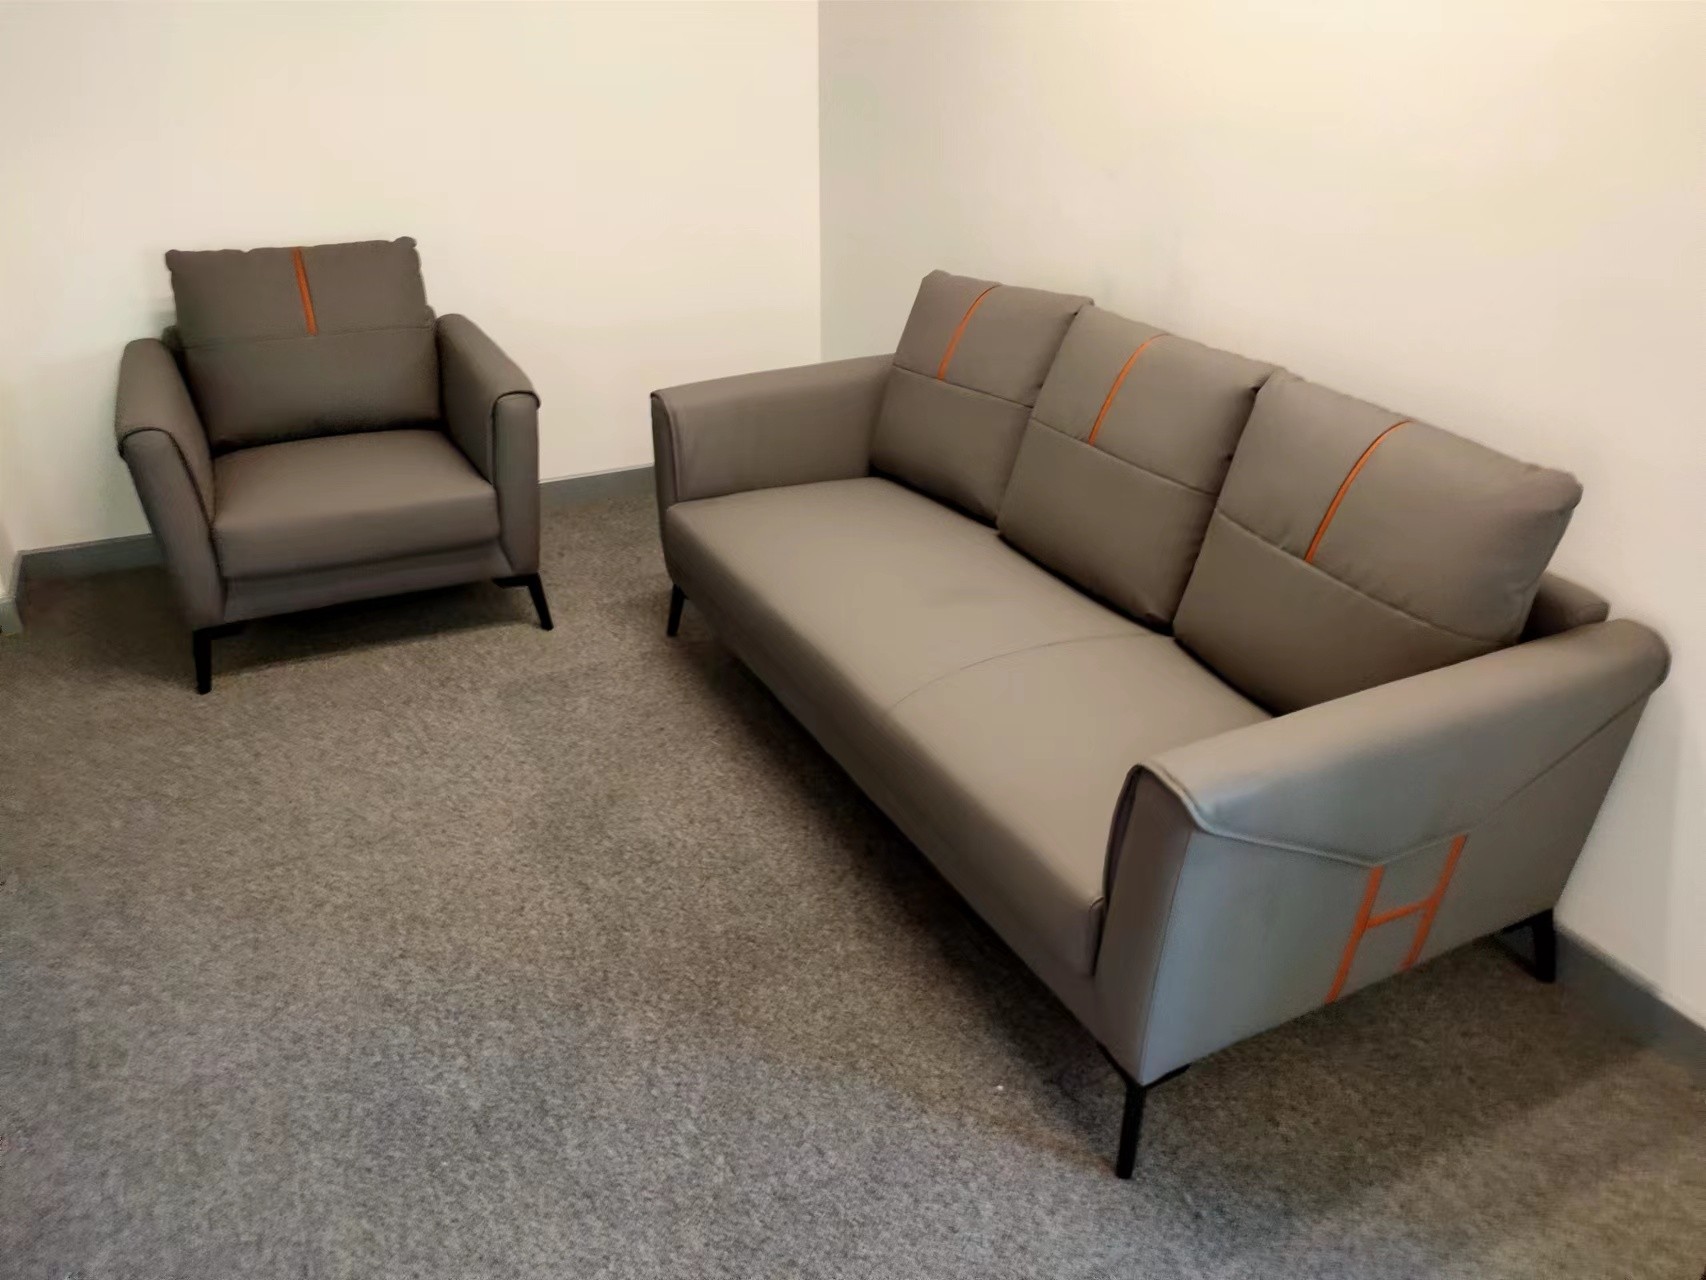 团众家具——深圳沙发回收，建立绿色低碳生活